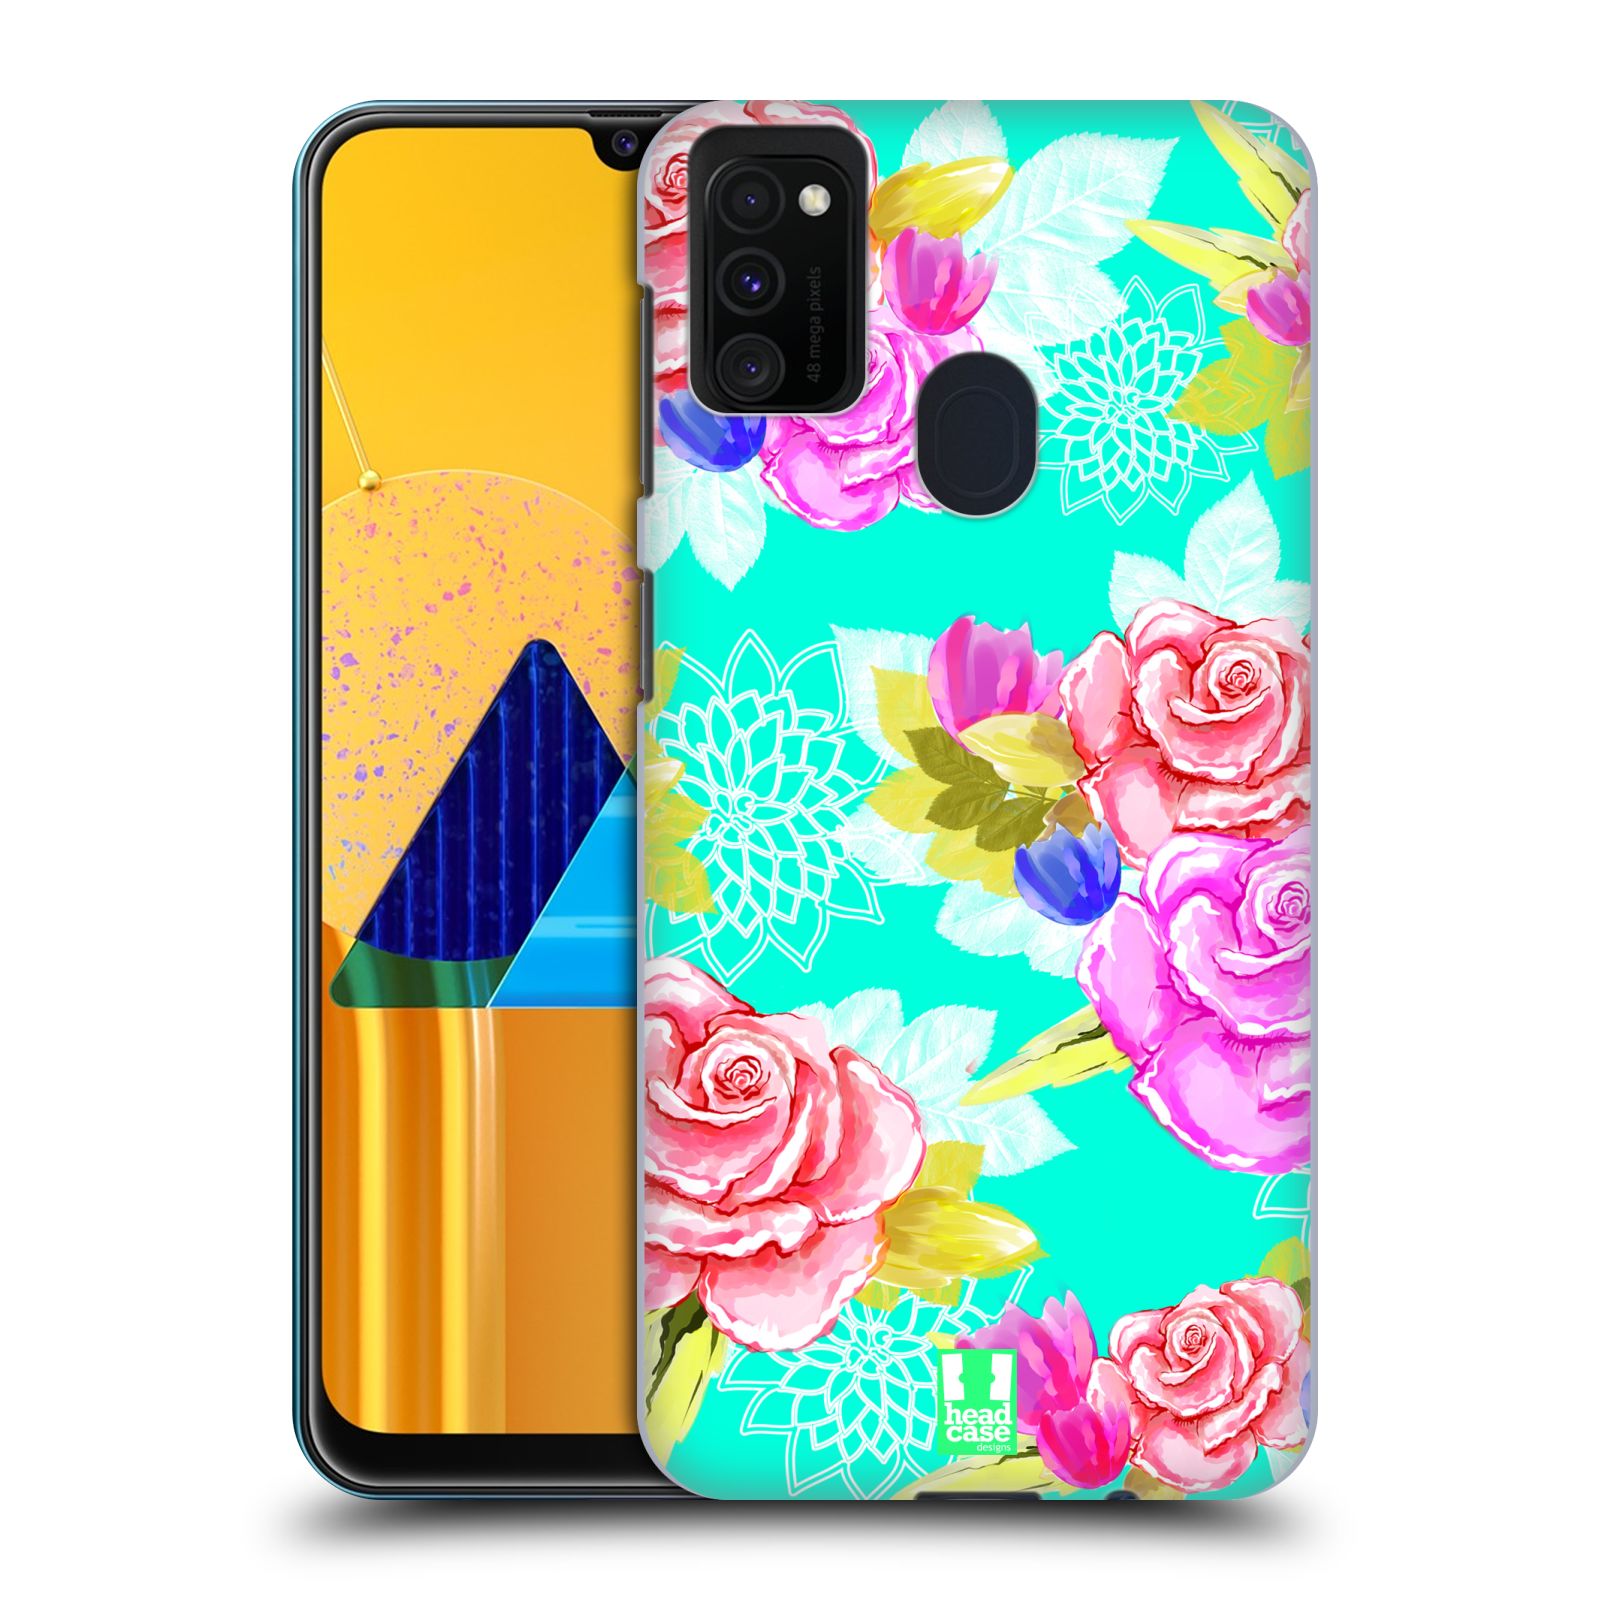 Plastový obal HEAD CASE na mobil Samsung Galaxy M30s vzor Malované květiny barevné AQUA MODRÁ